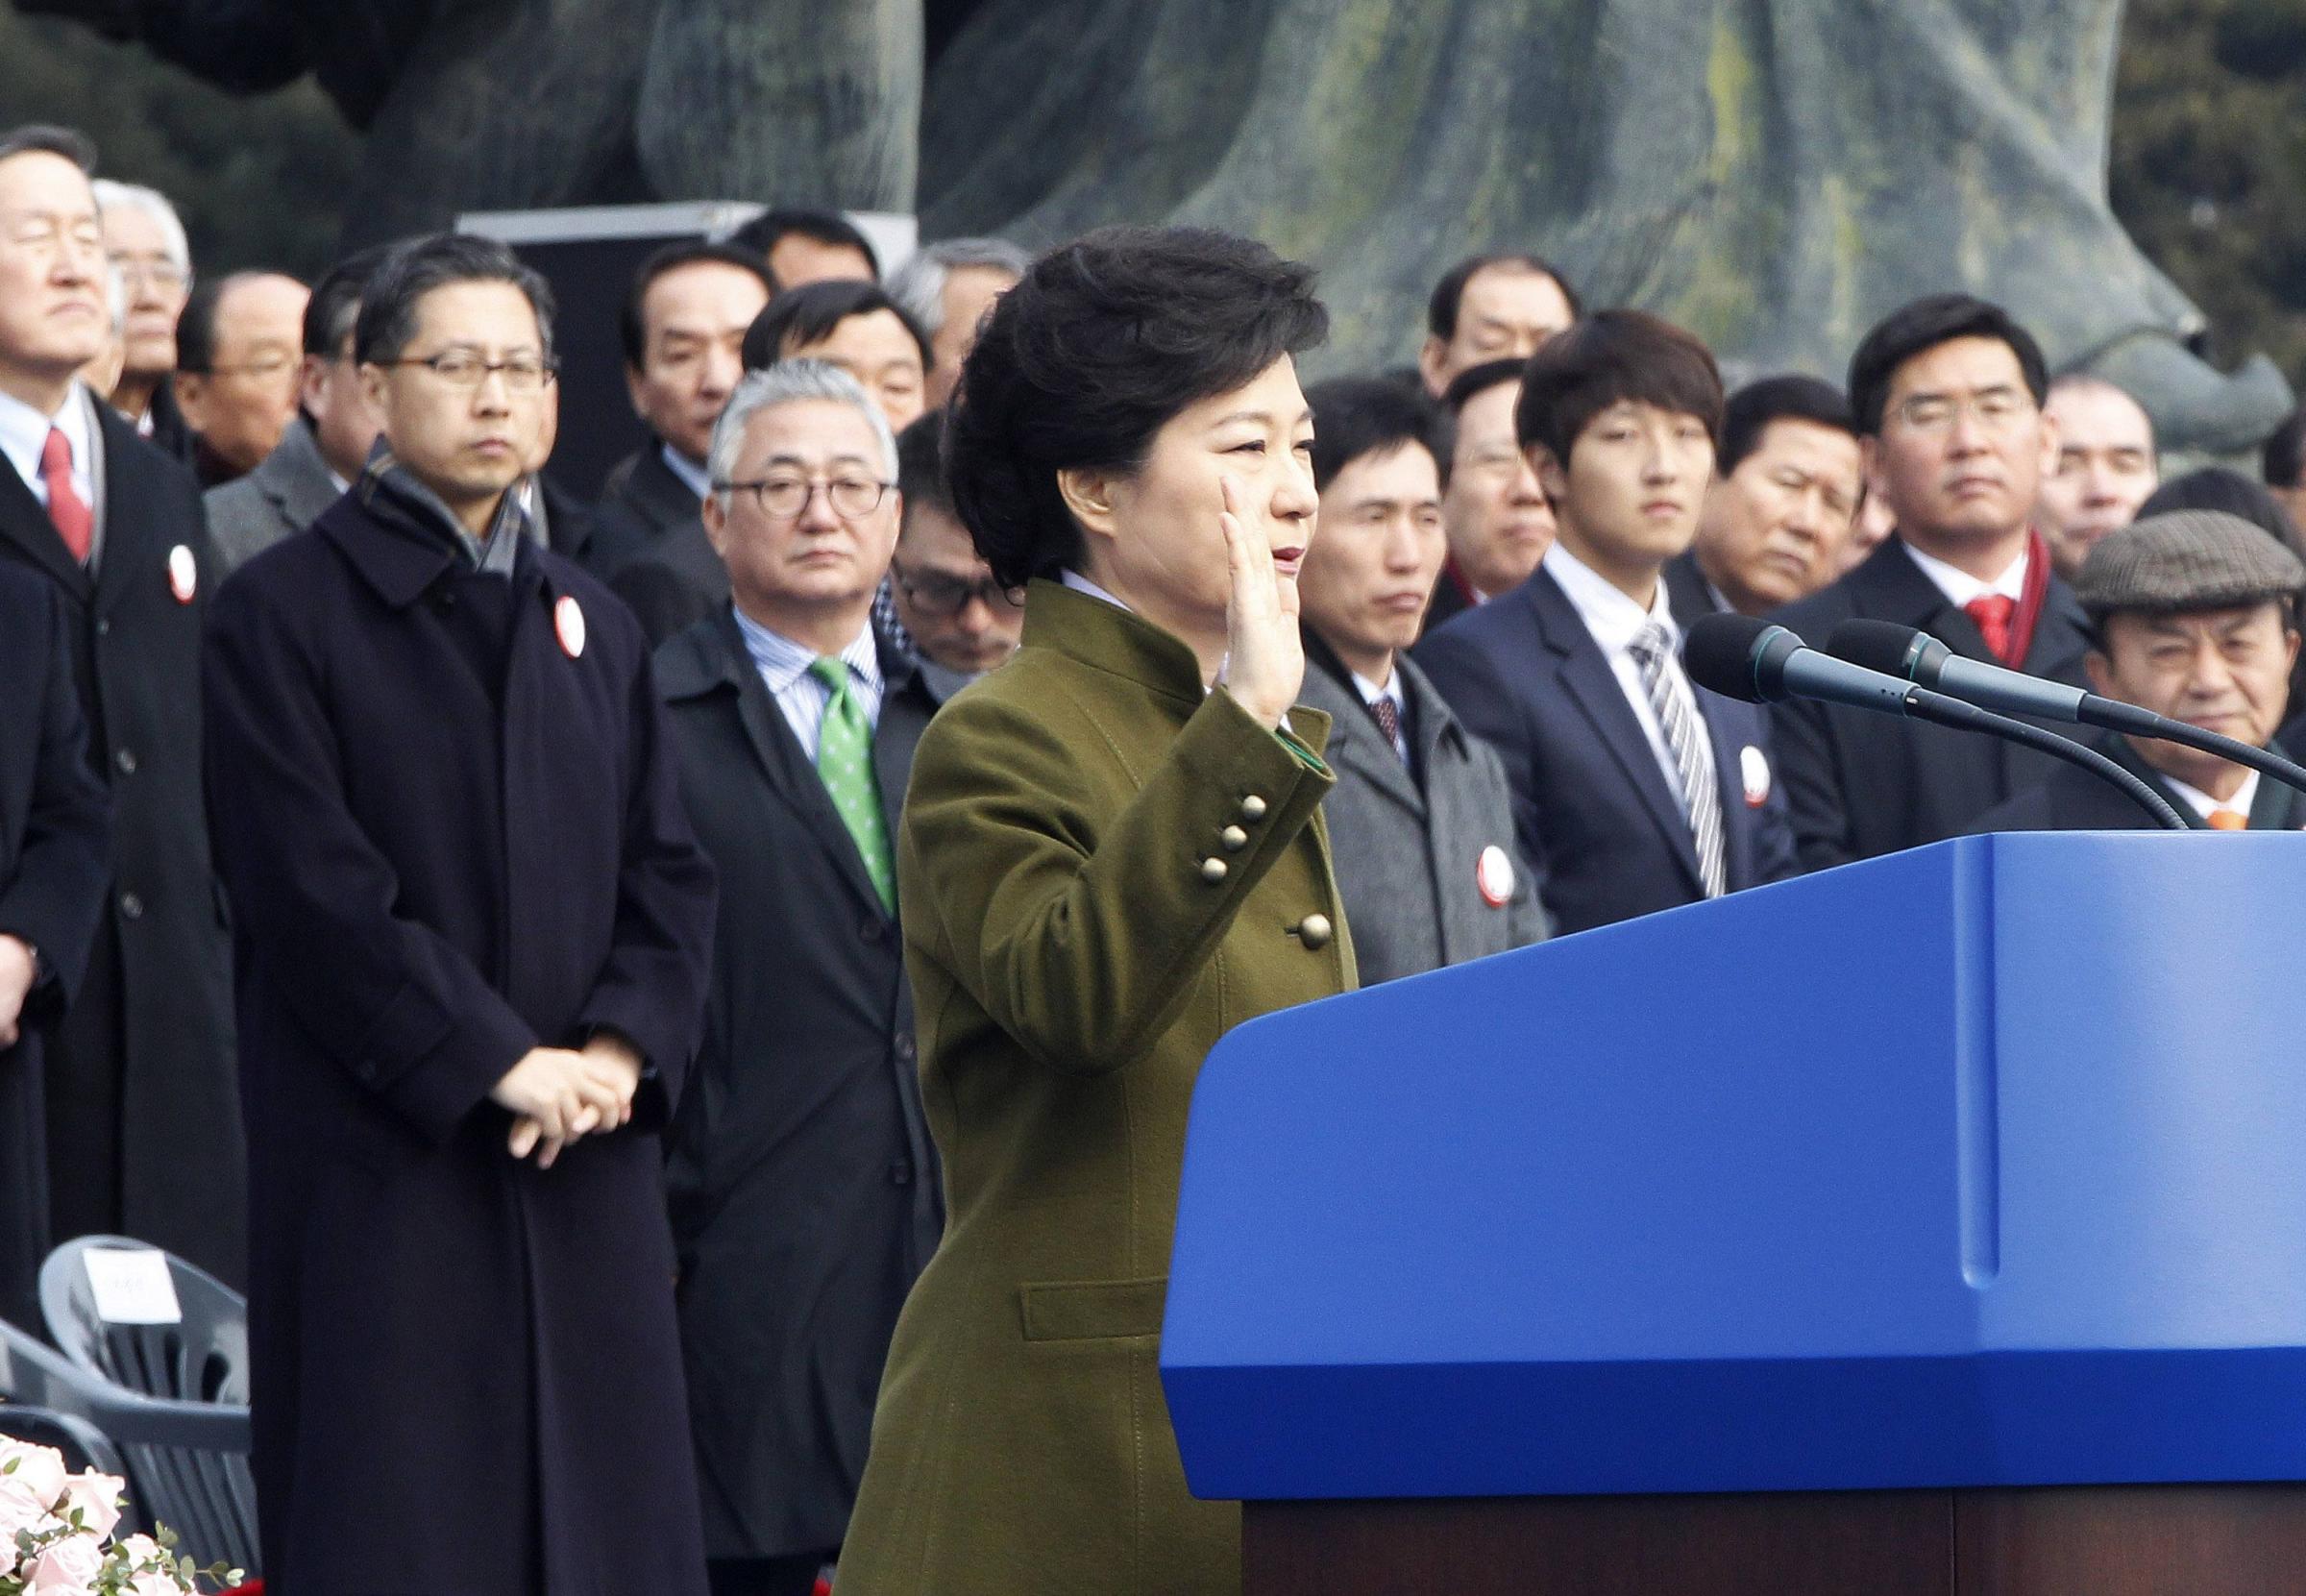 朴槿惠宣誓就职7万人捧场 承诺开启幸福新时代敦促朝鲜弃核[2]- 中文国际